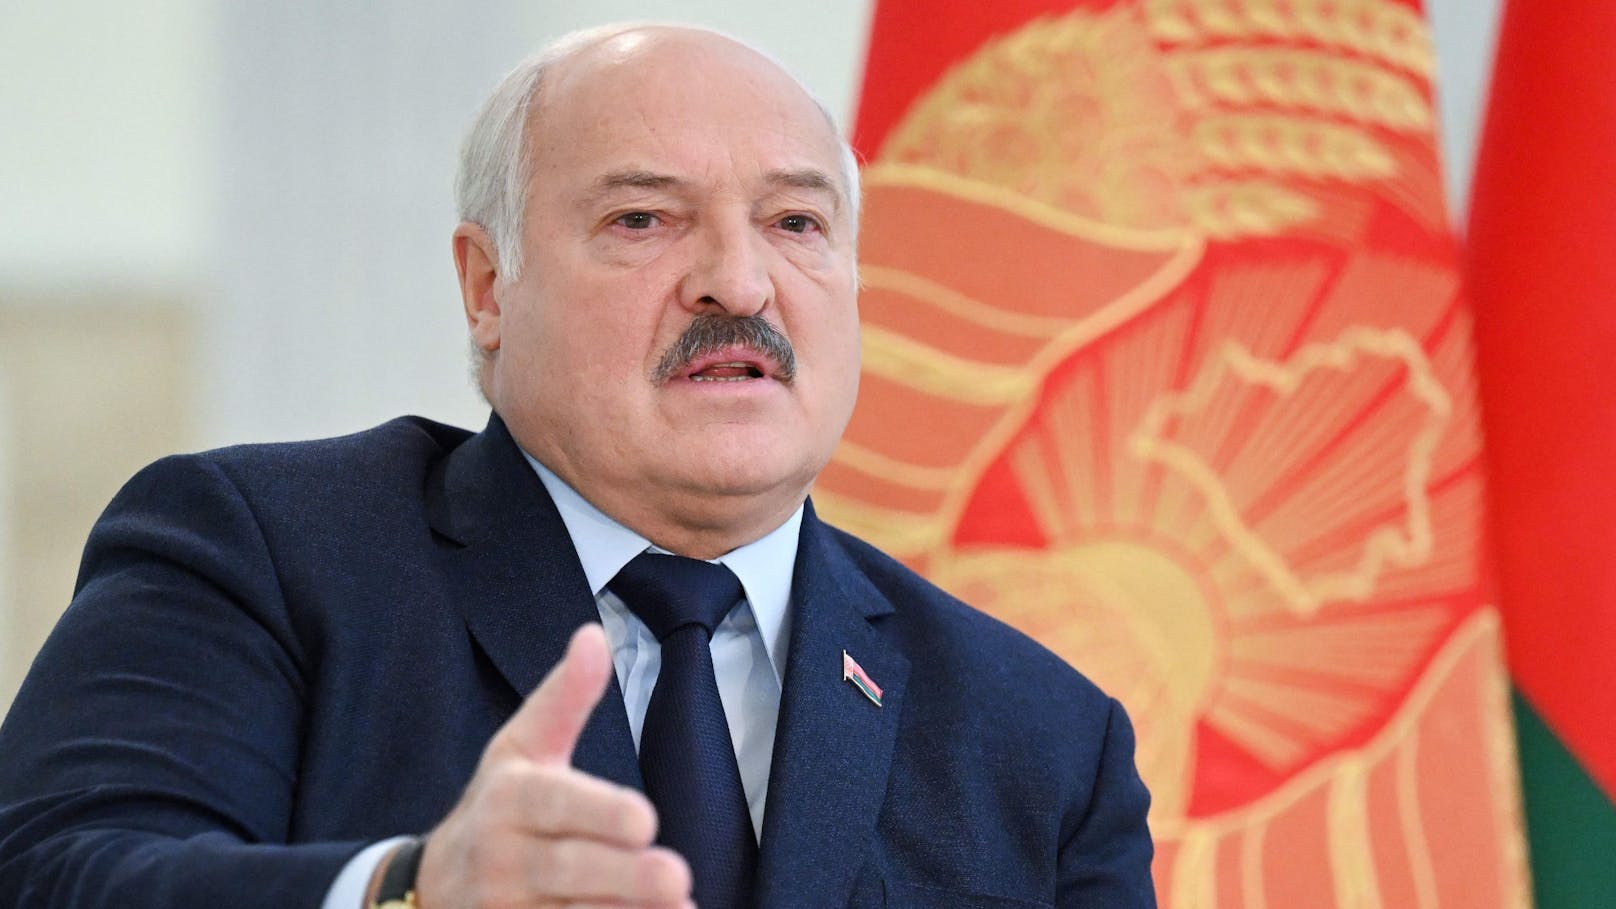 Der belarussische Präsident ruft zu einer Waffenruhe "ohne Vorbedingungen" in der Ukraine auf.